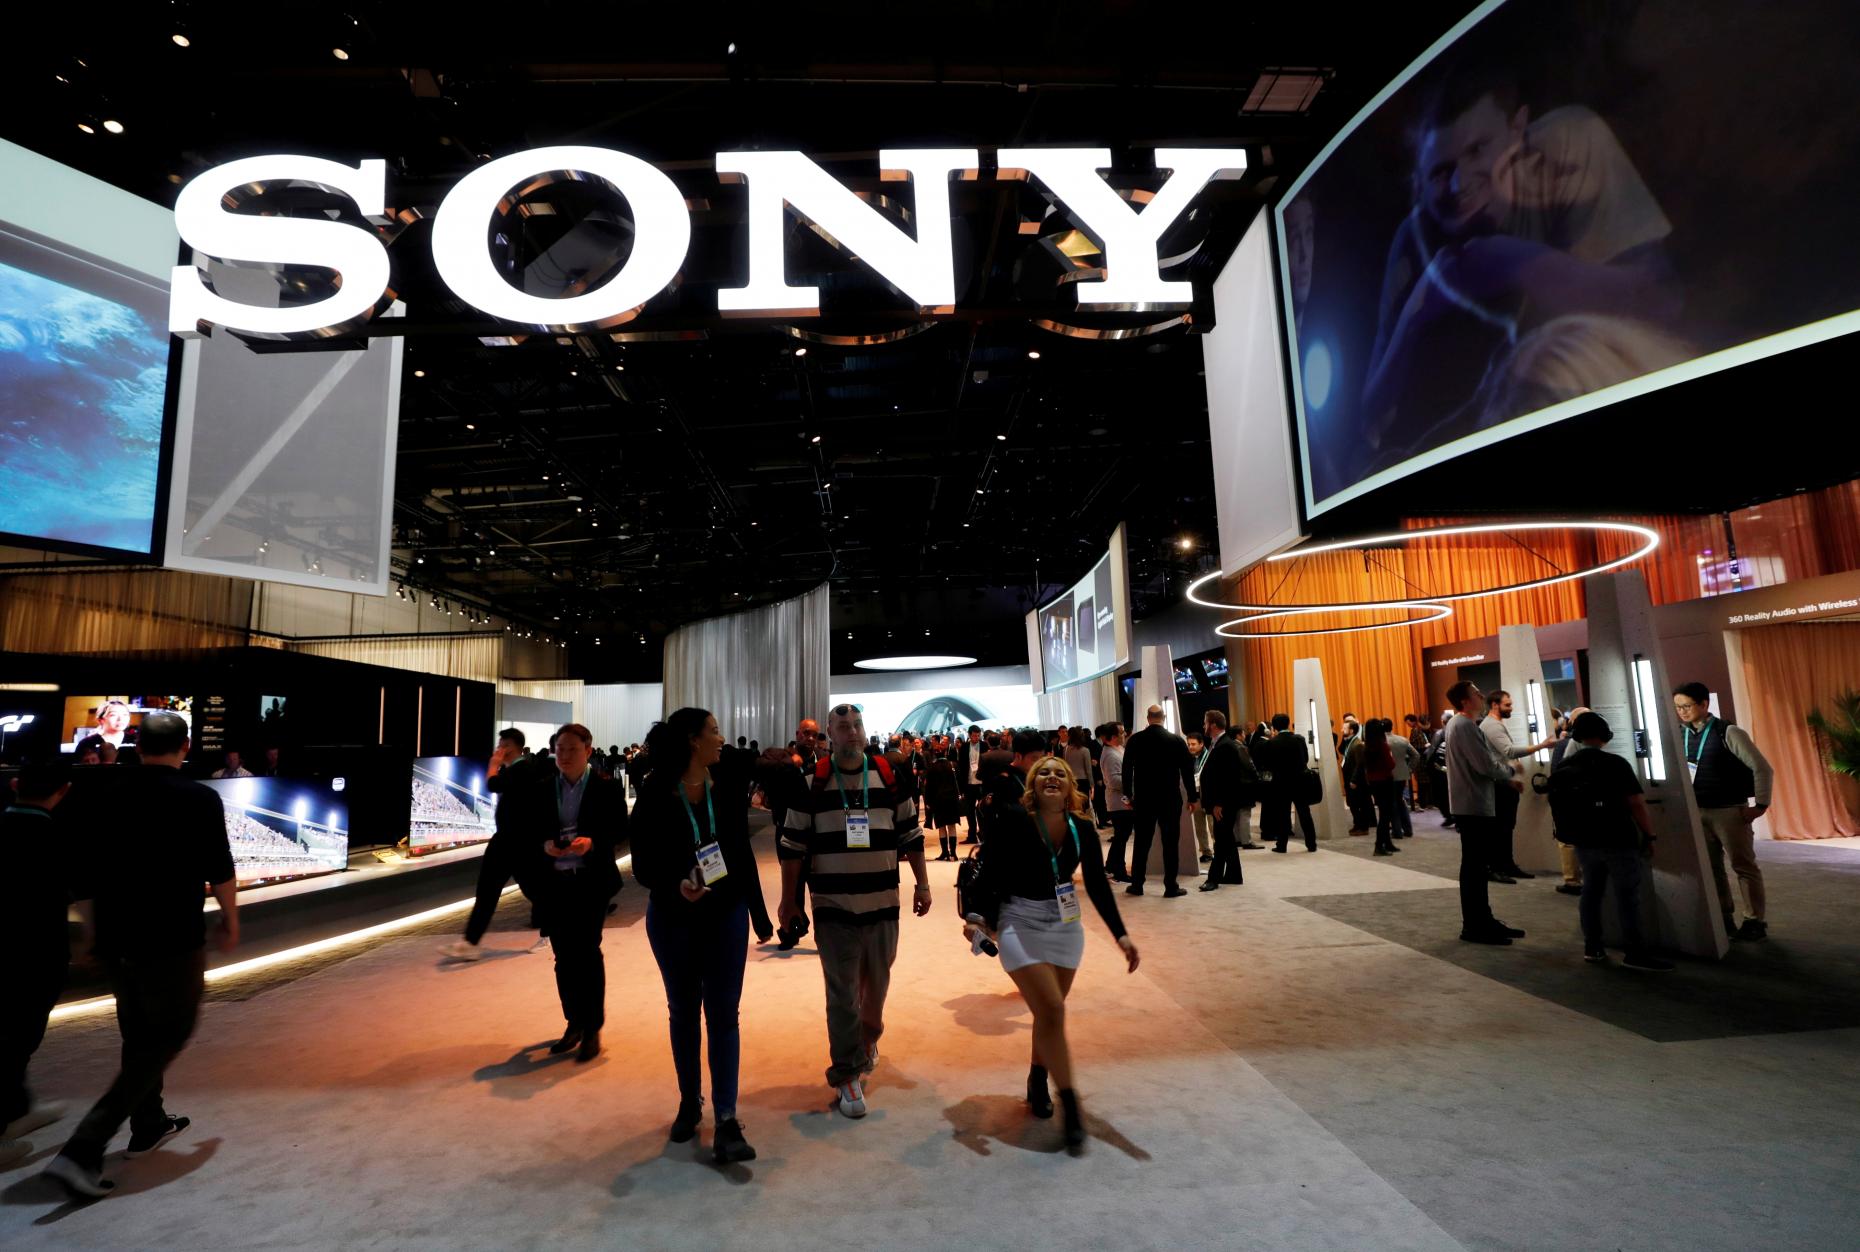 Sony té nous projectors làser amb una resolució de 10